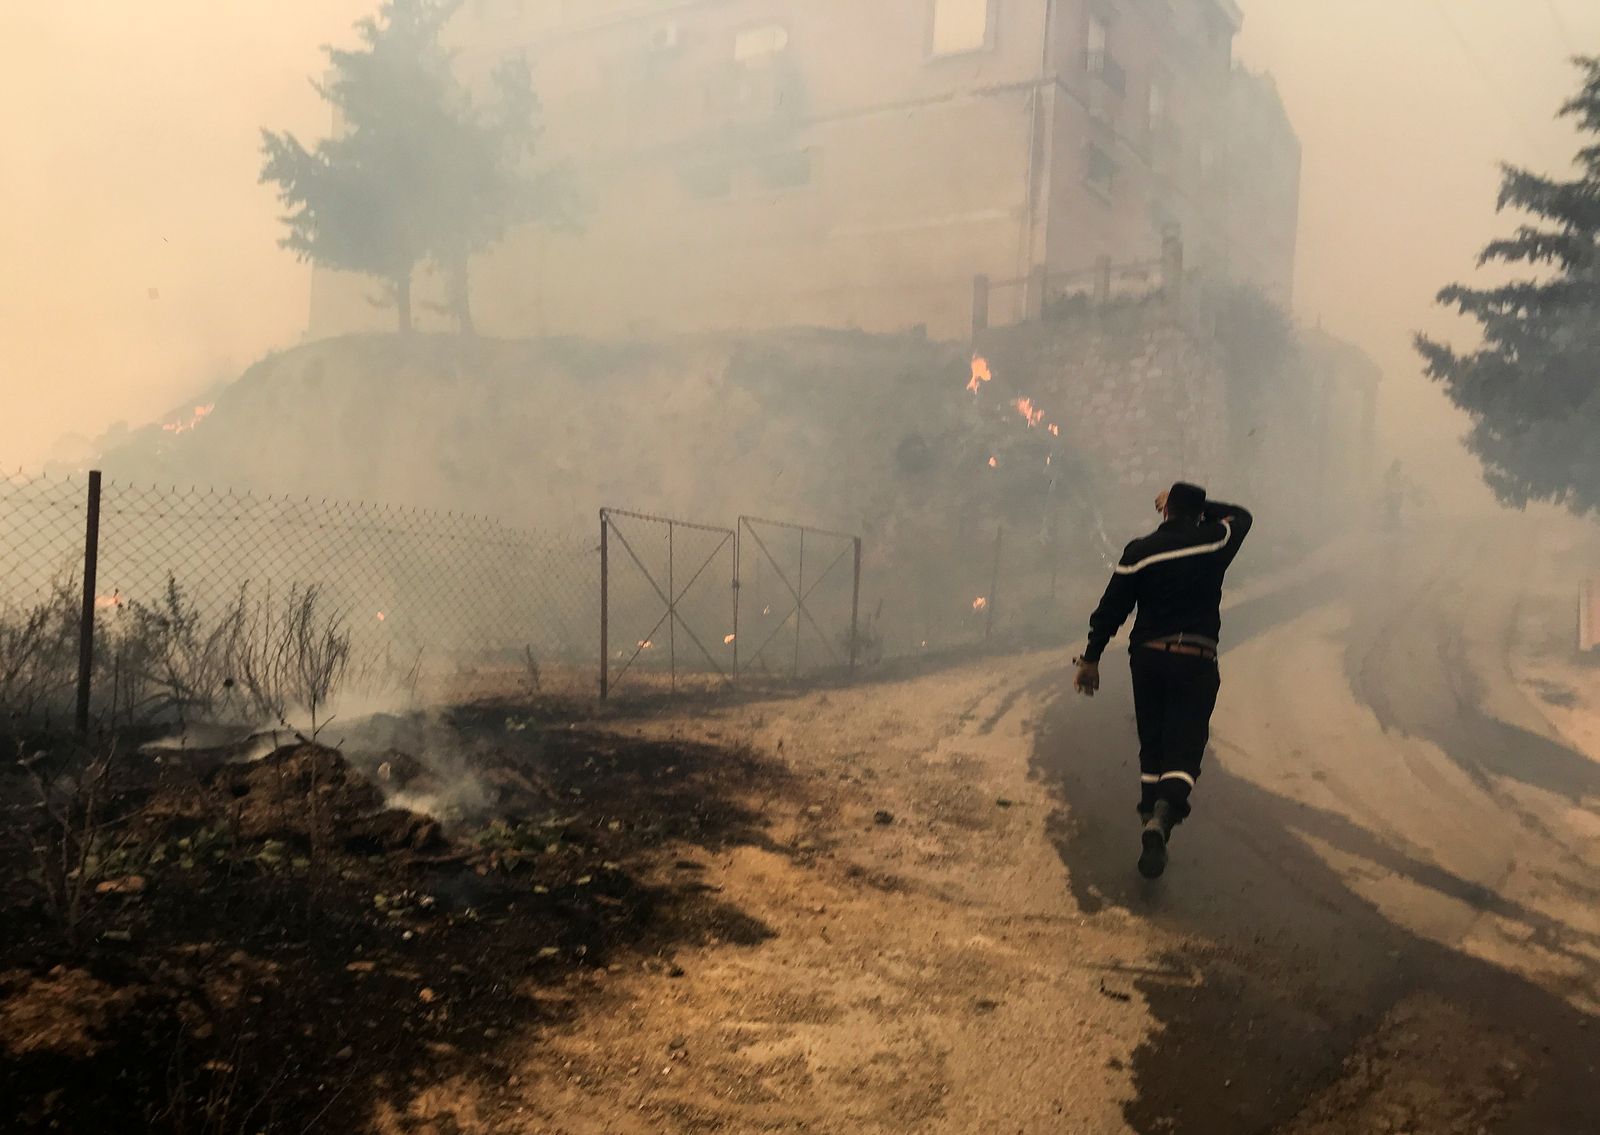 عامل إنقاذ يسير بالقرب من الدخان المتصاعد من حريق غابة في ولاية تيزي وزو الجبلية، شرق الجزائر العاصمة، الجزائر. 10 أغسطس 2021. - REUTERS